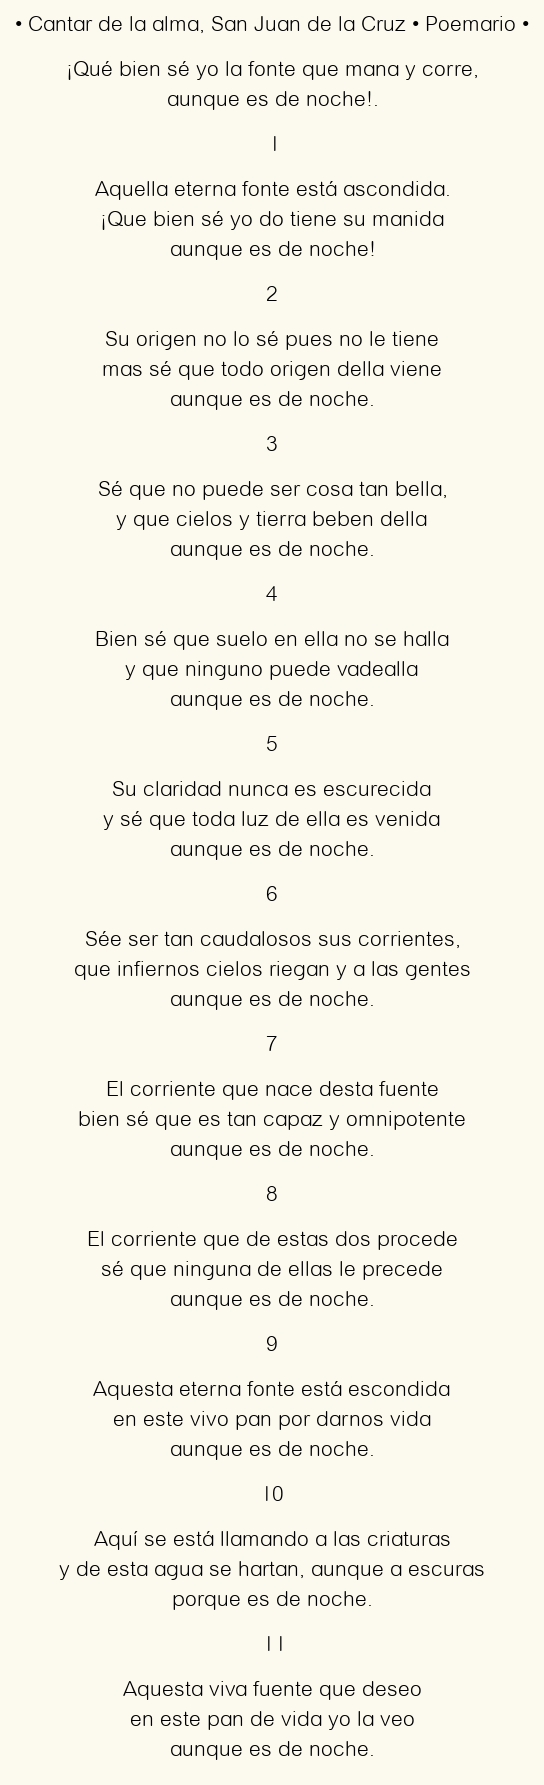 Imagen con el poema Cantar de la alma, por San Juan de la Cruz